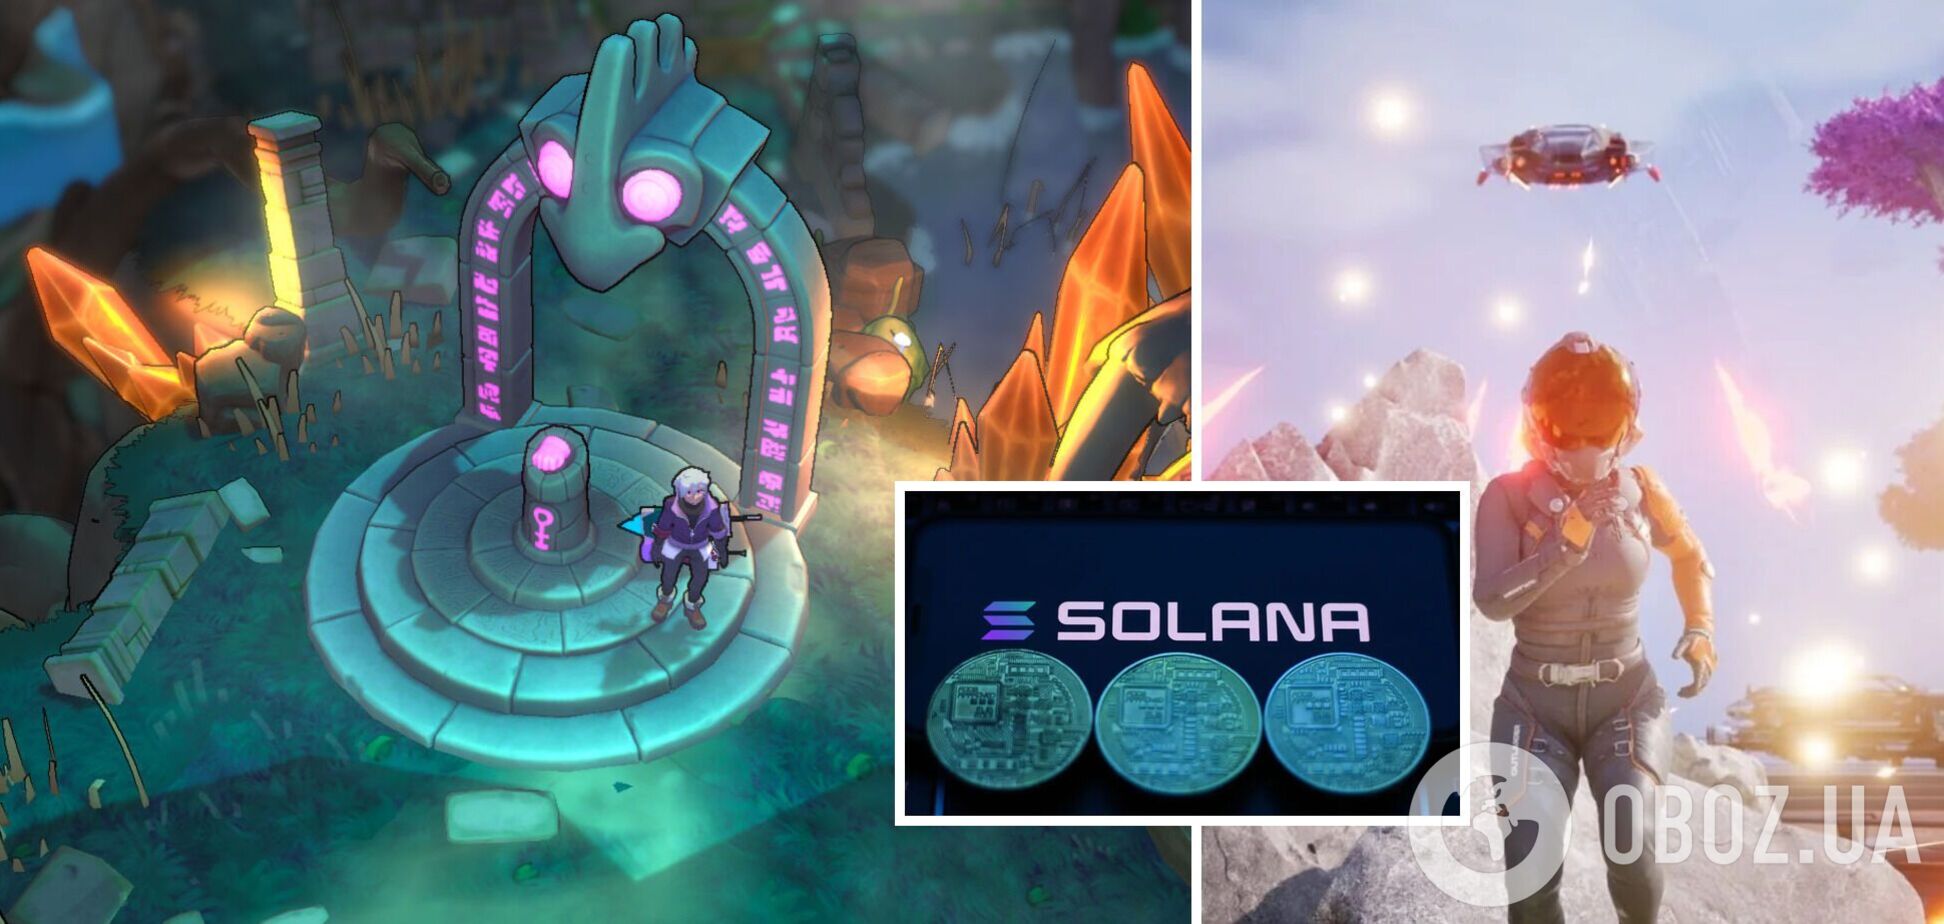 Заработать криптовалюту можно и в играх - в каких проектах раздают Solana